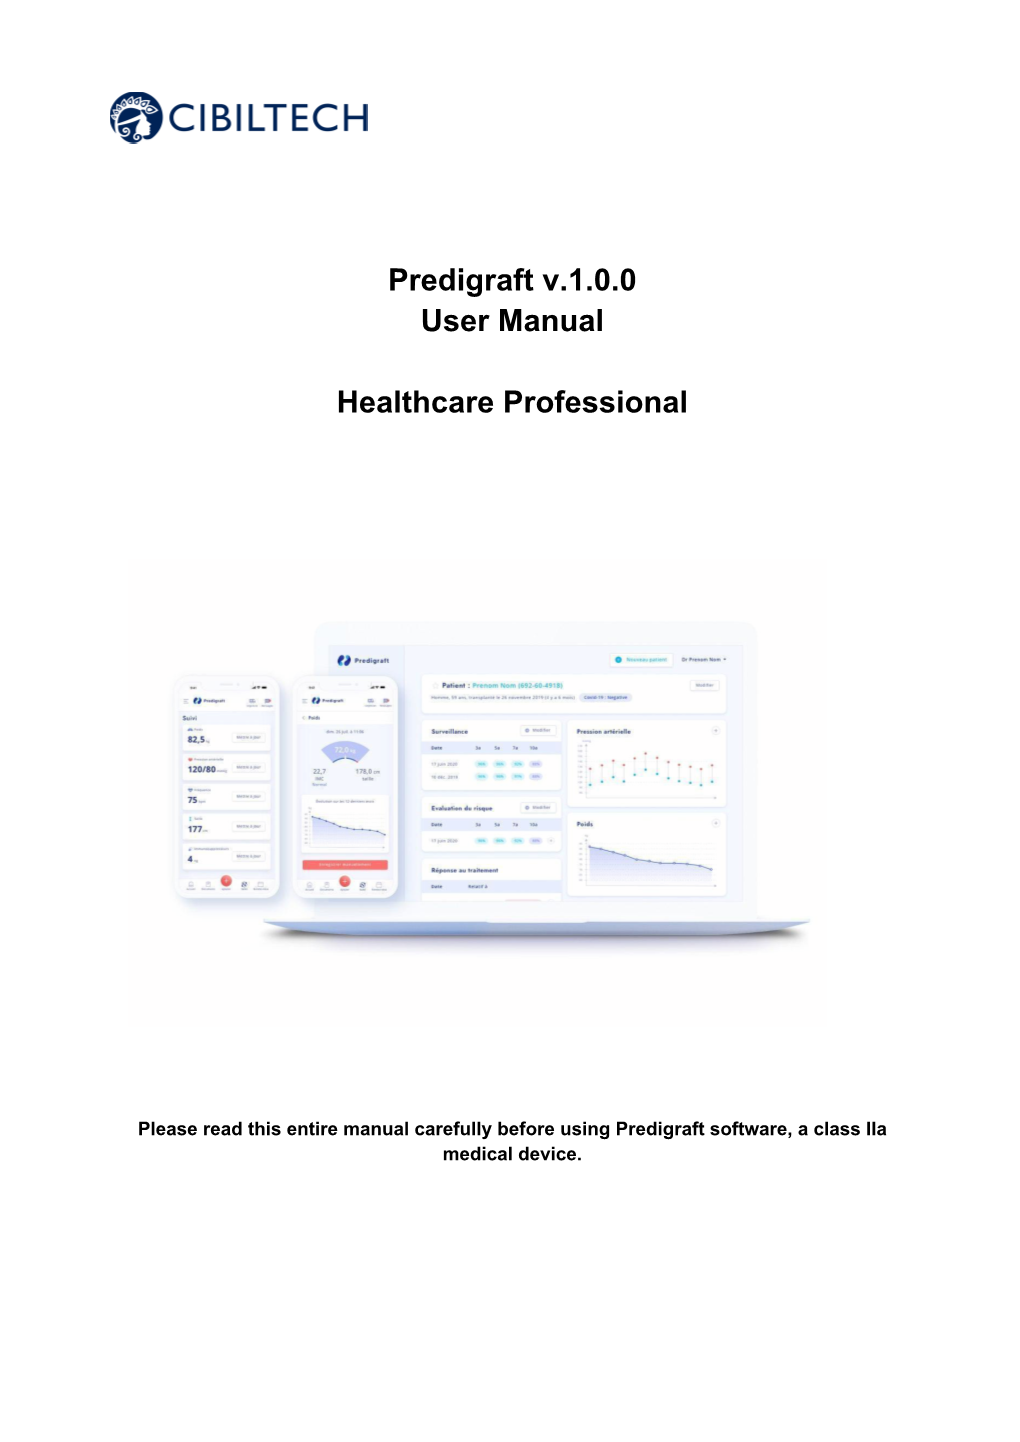 Predigraft V.1.0.0 User Manual Healthcare Professional